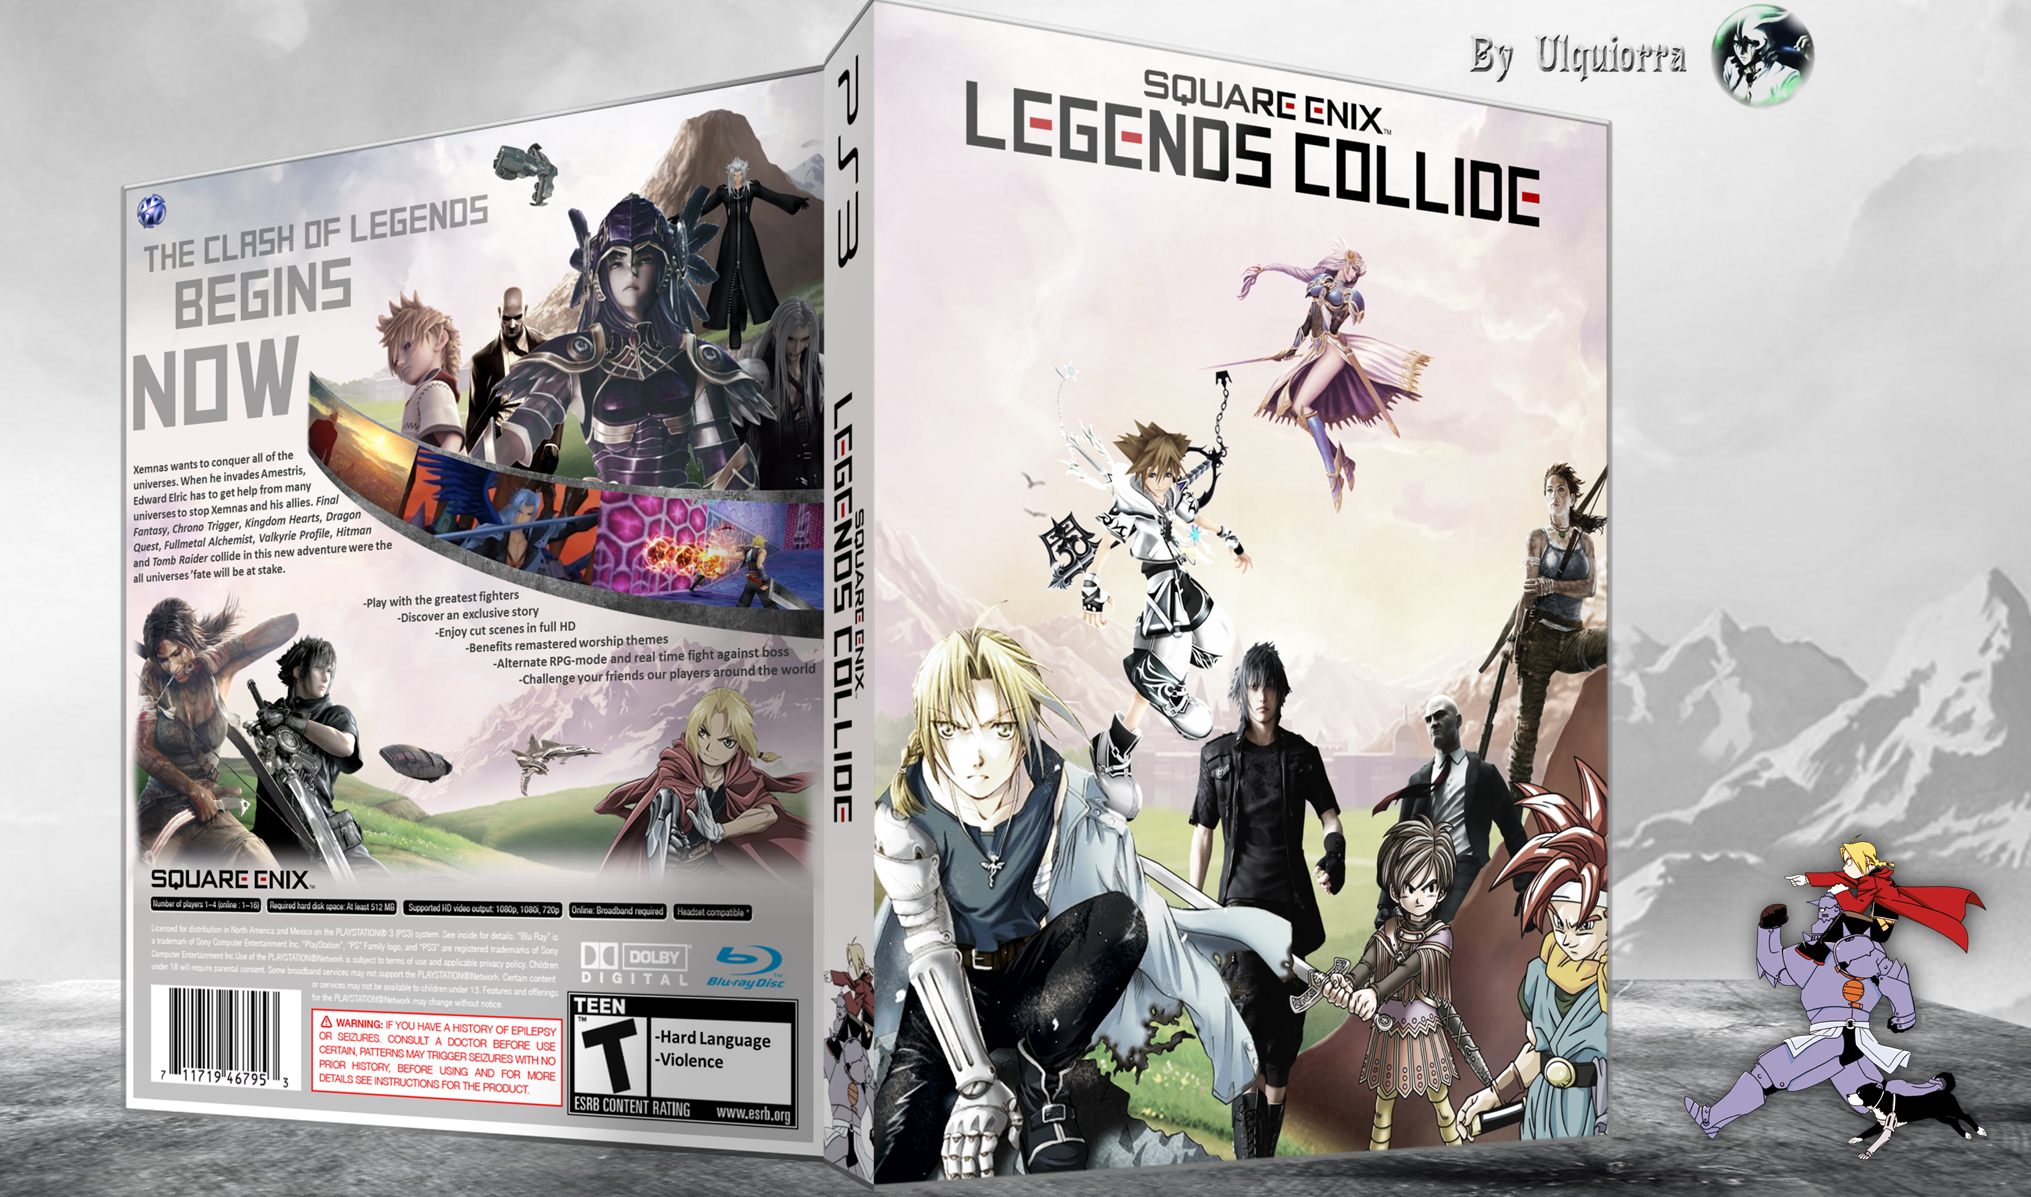 Square Enix: Legends Collide box cover